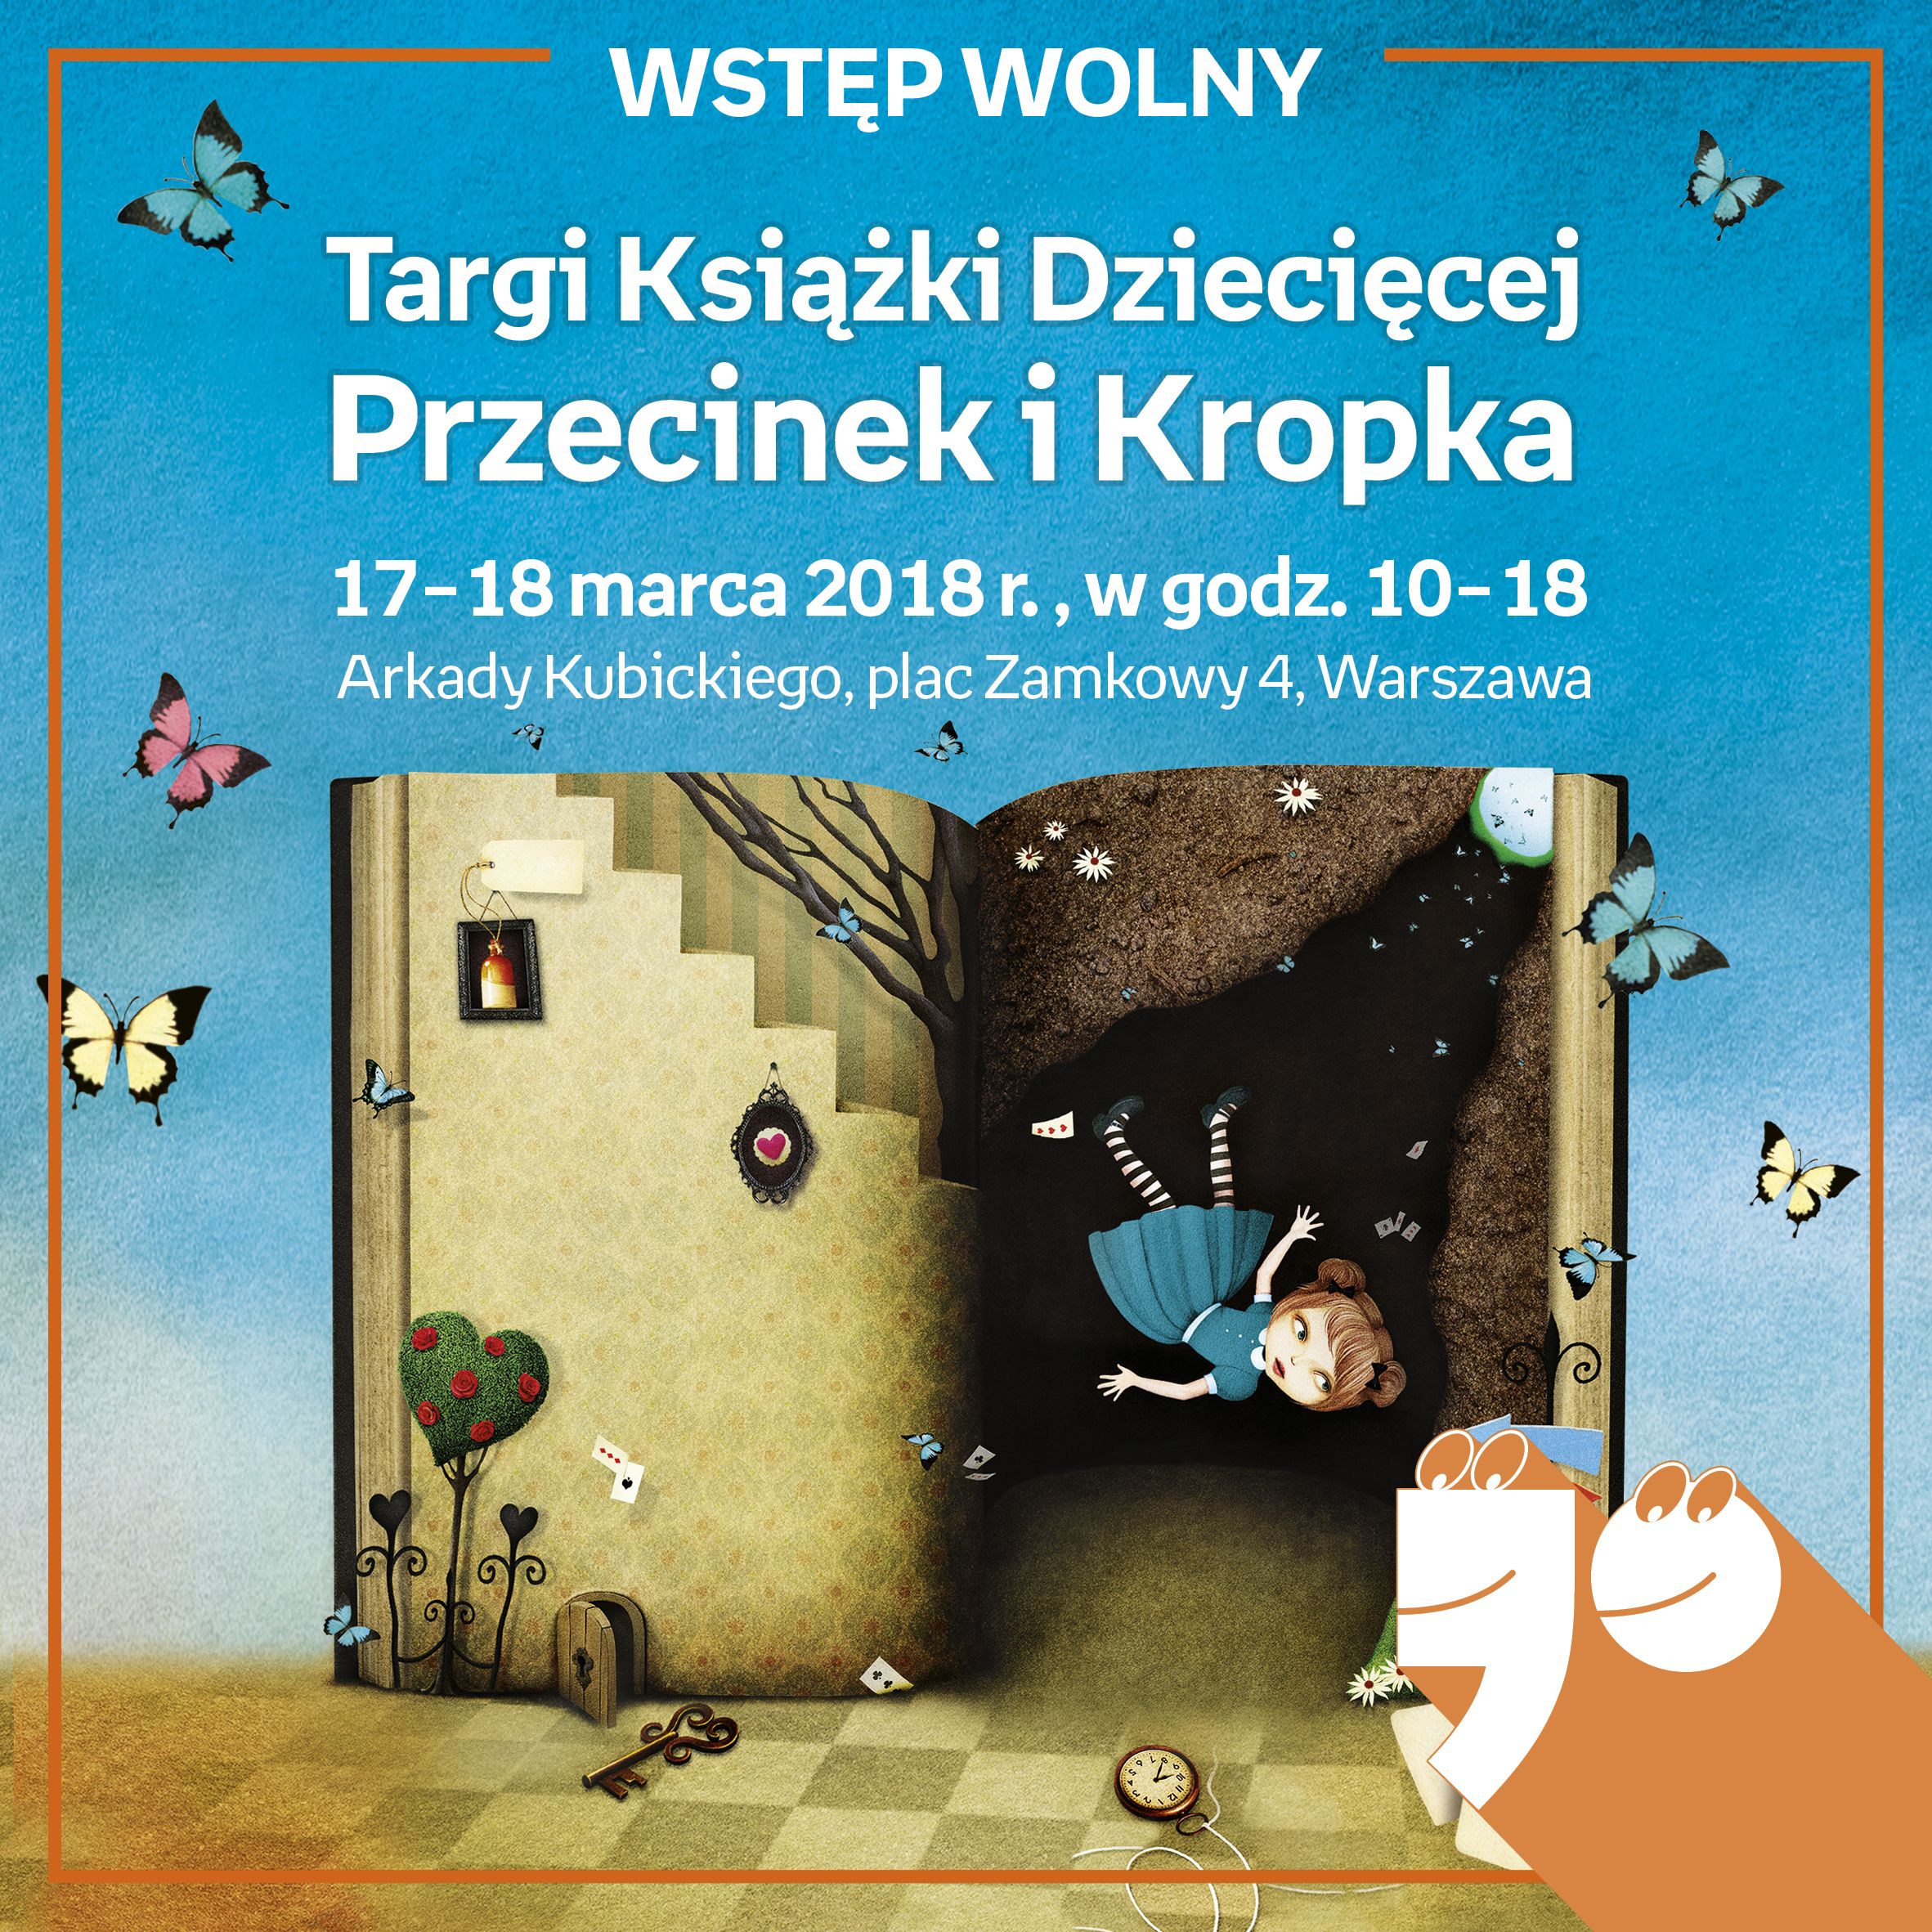  Targi Książki Dziecięcej, Przecinek i Kropka 2018, 